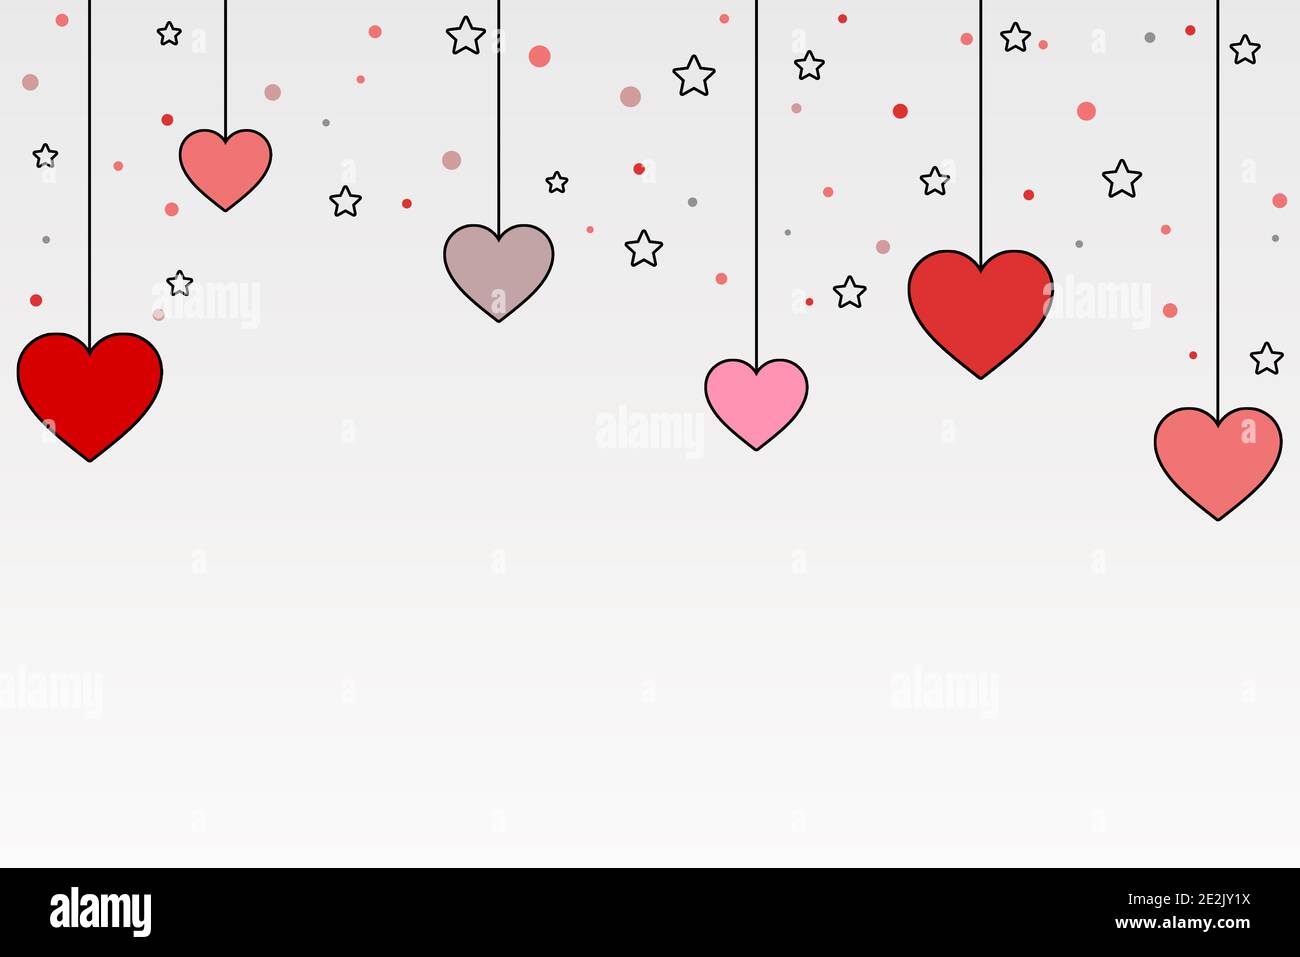 Illustration de la saint-valentin, sur fond blanc dégradé avec des coeurs roses suspendus, des étoiles et des points.mariage dessing. Banque D'Images